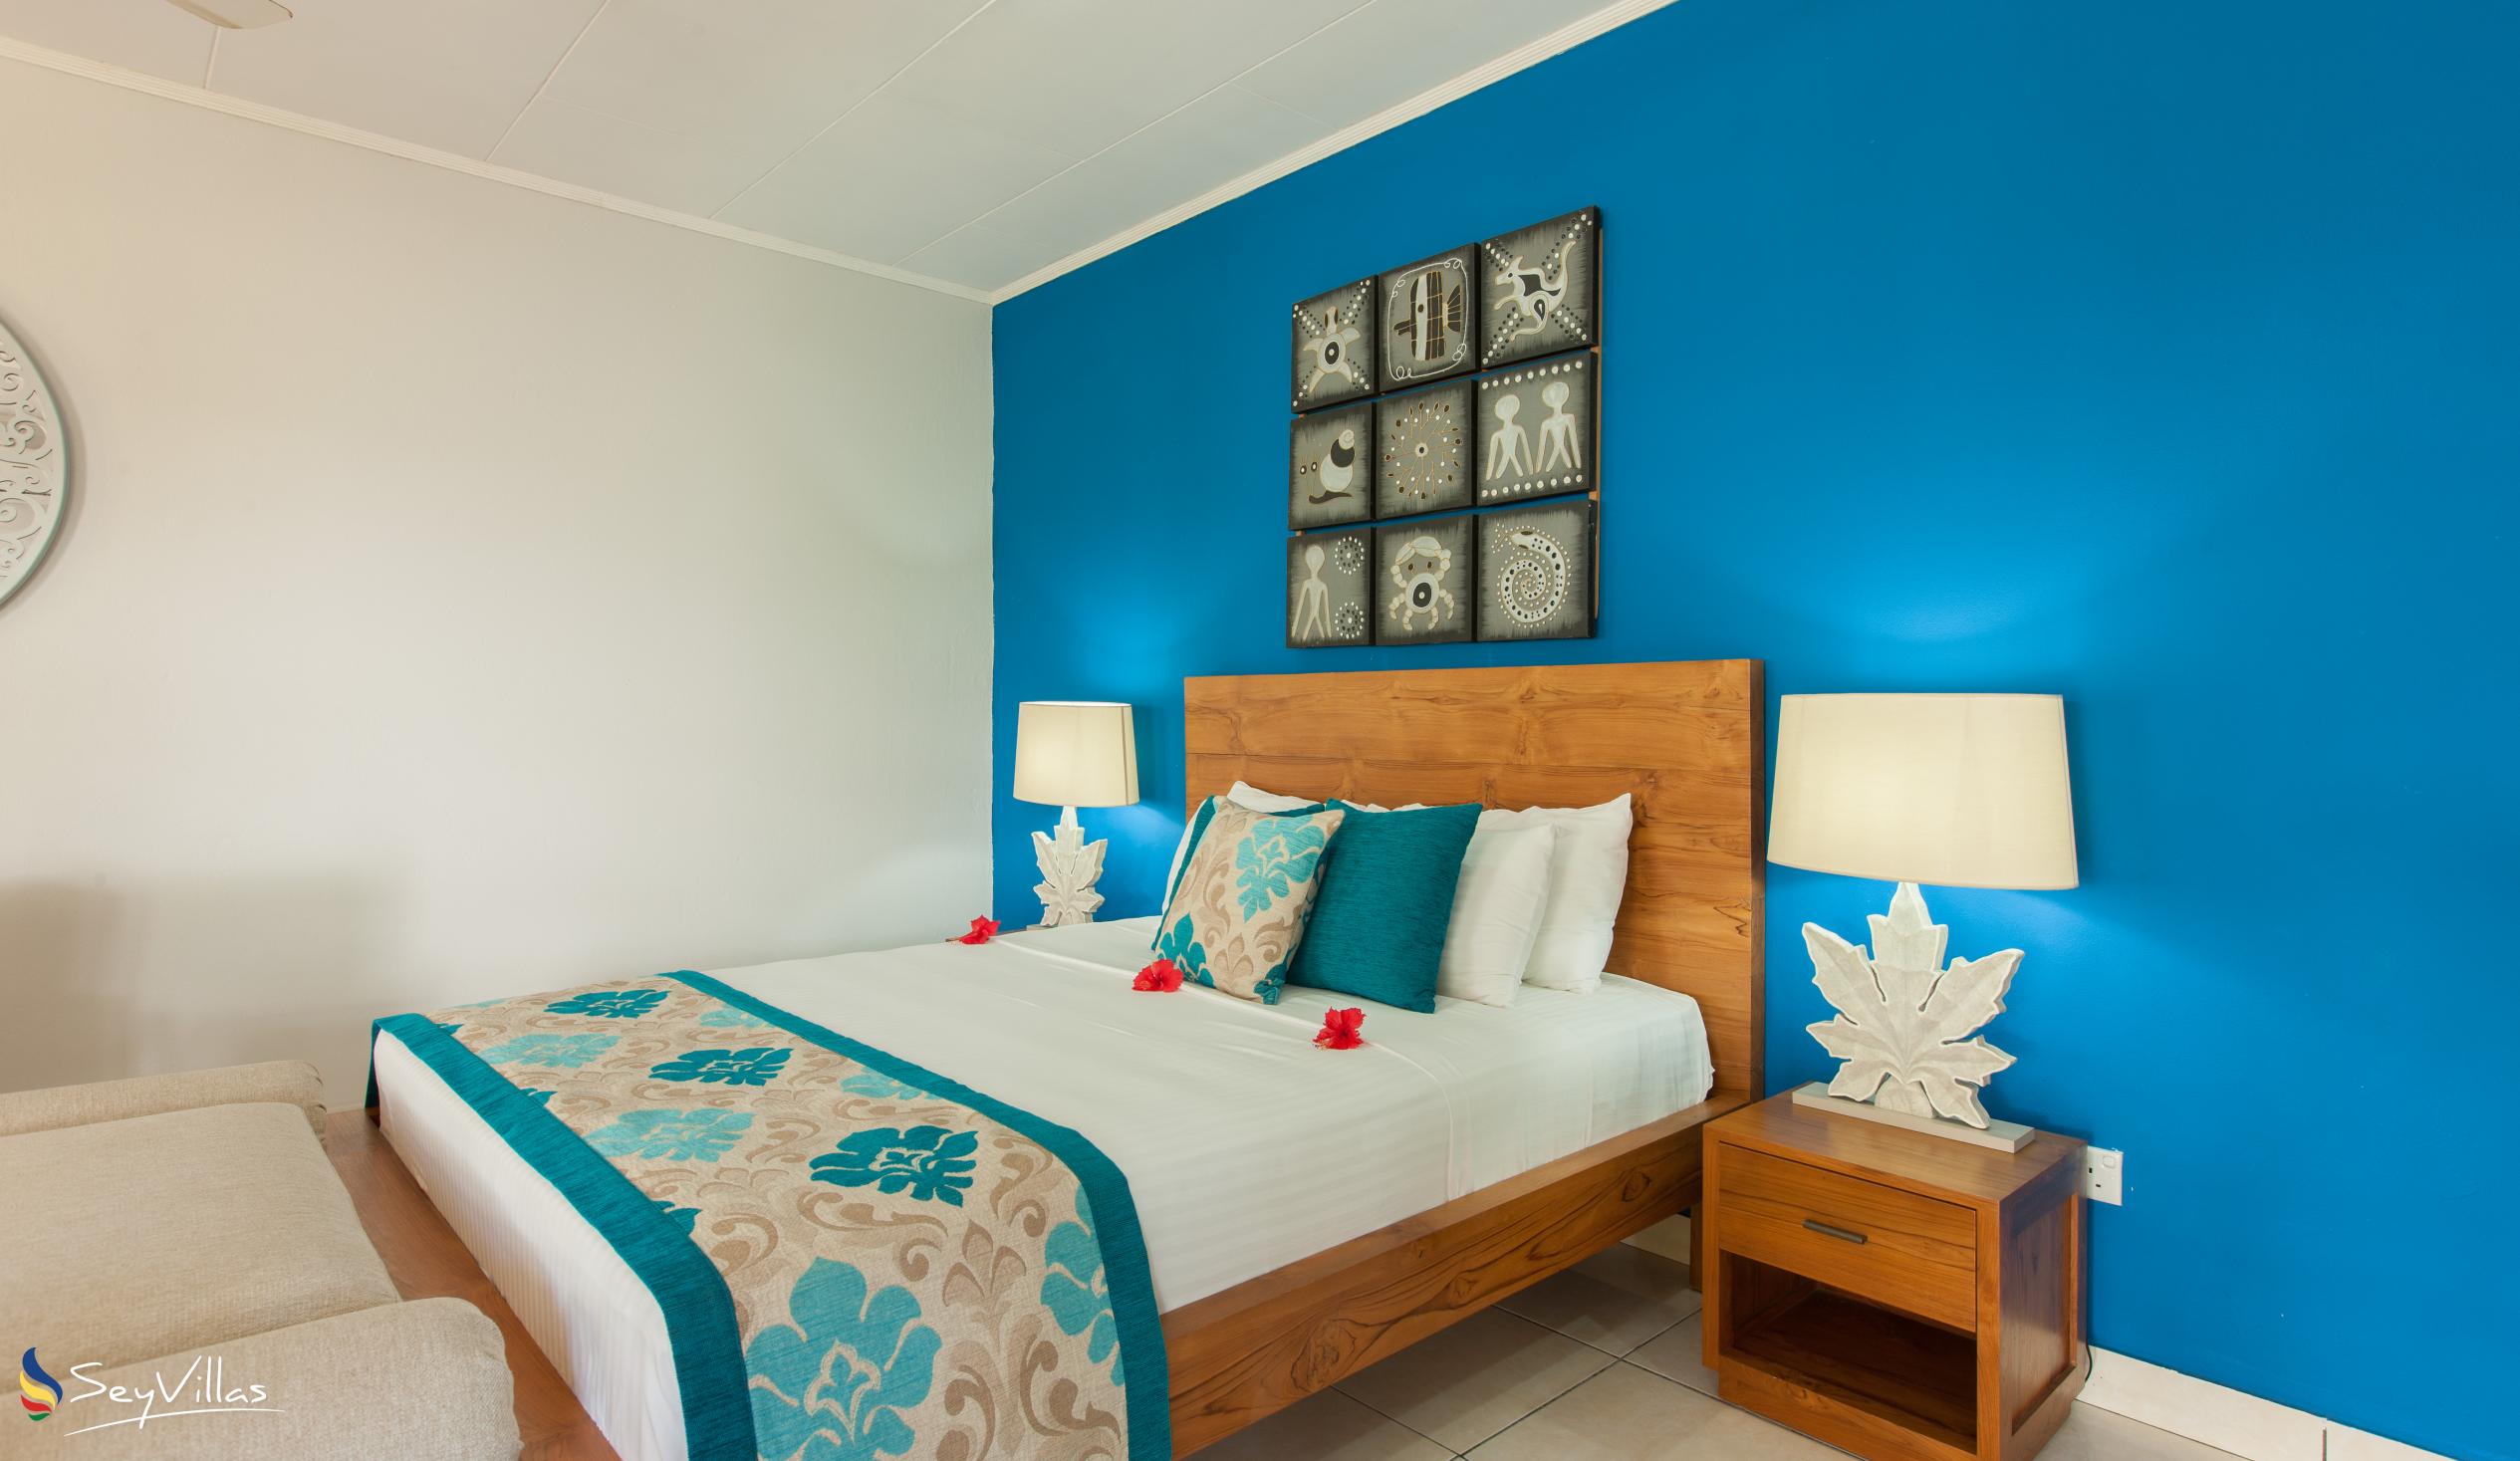 Photo 42: Villas de Mer - Junior Suite - Praslin (Seychelles)